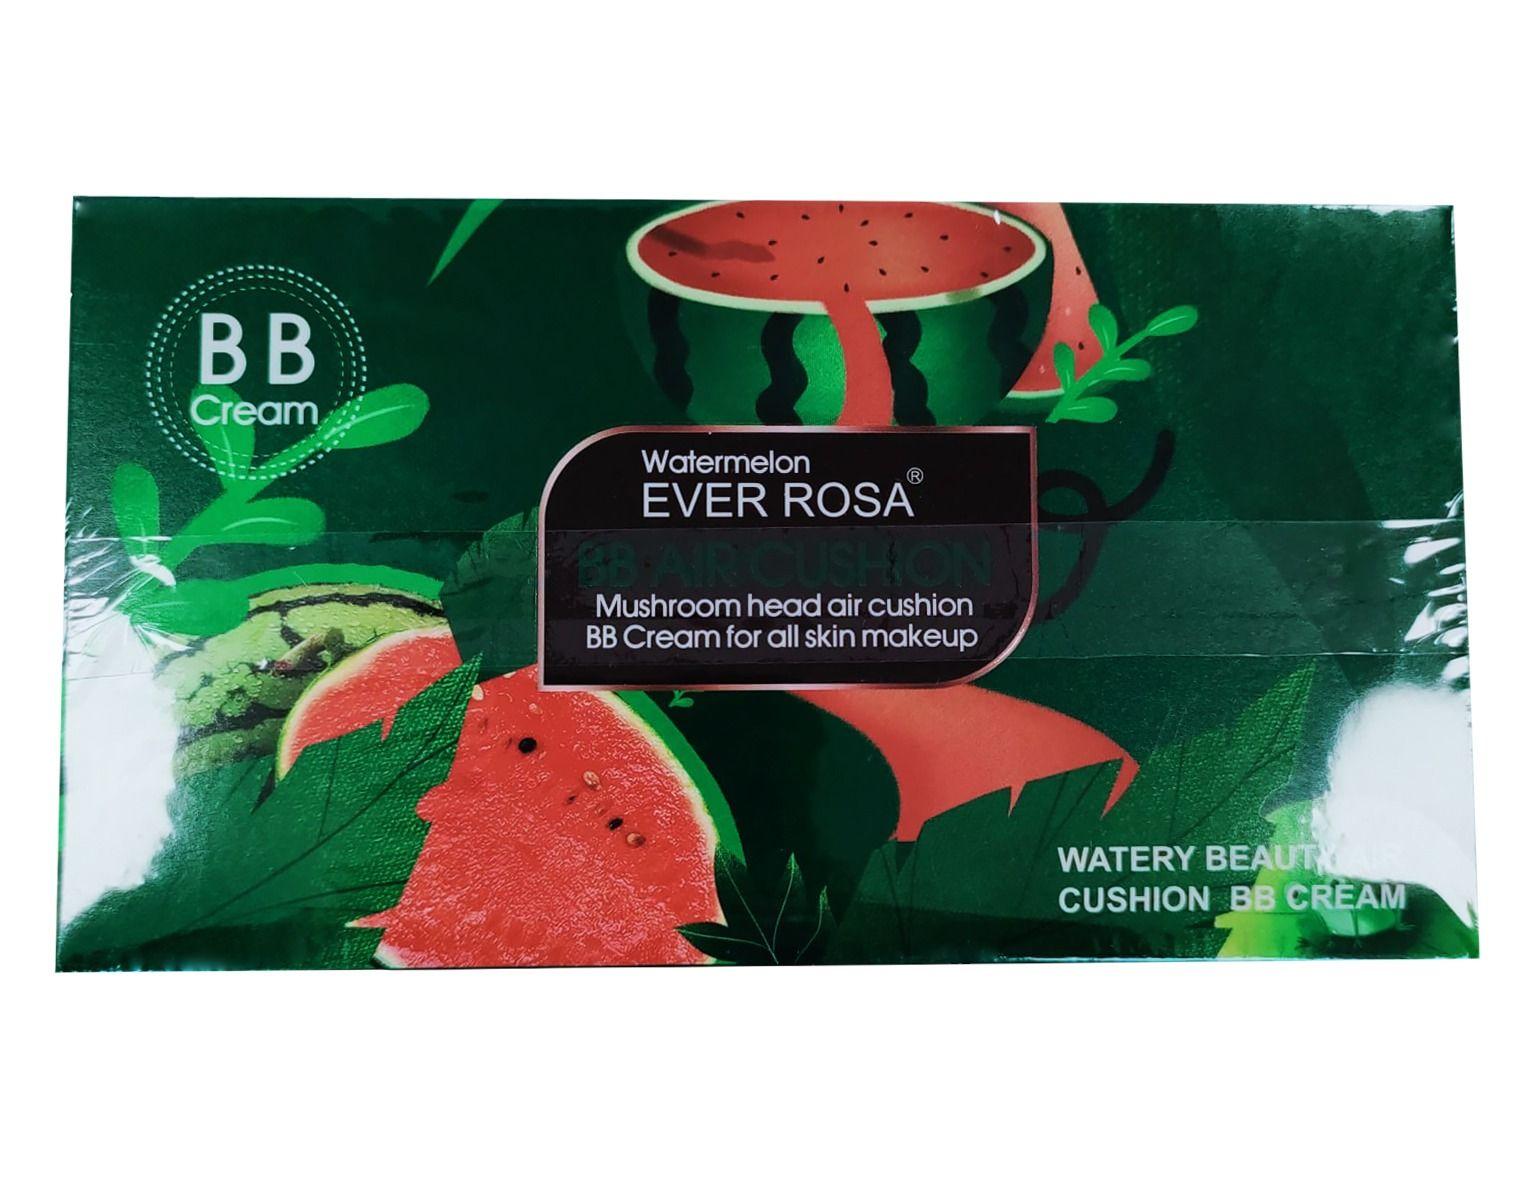 BB Air Cushion Ever Rosa Cream - 130#, Watermelon